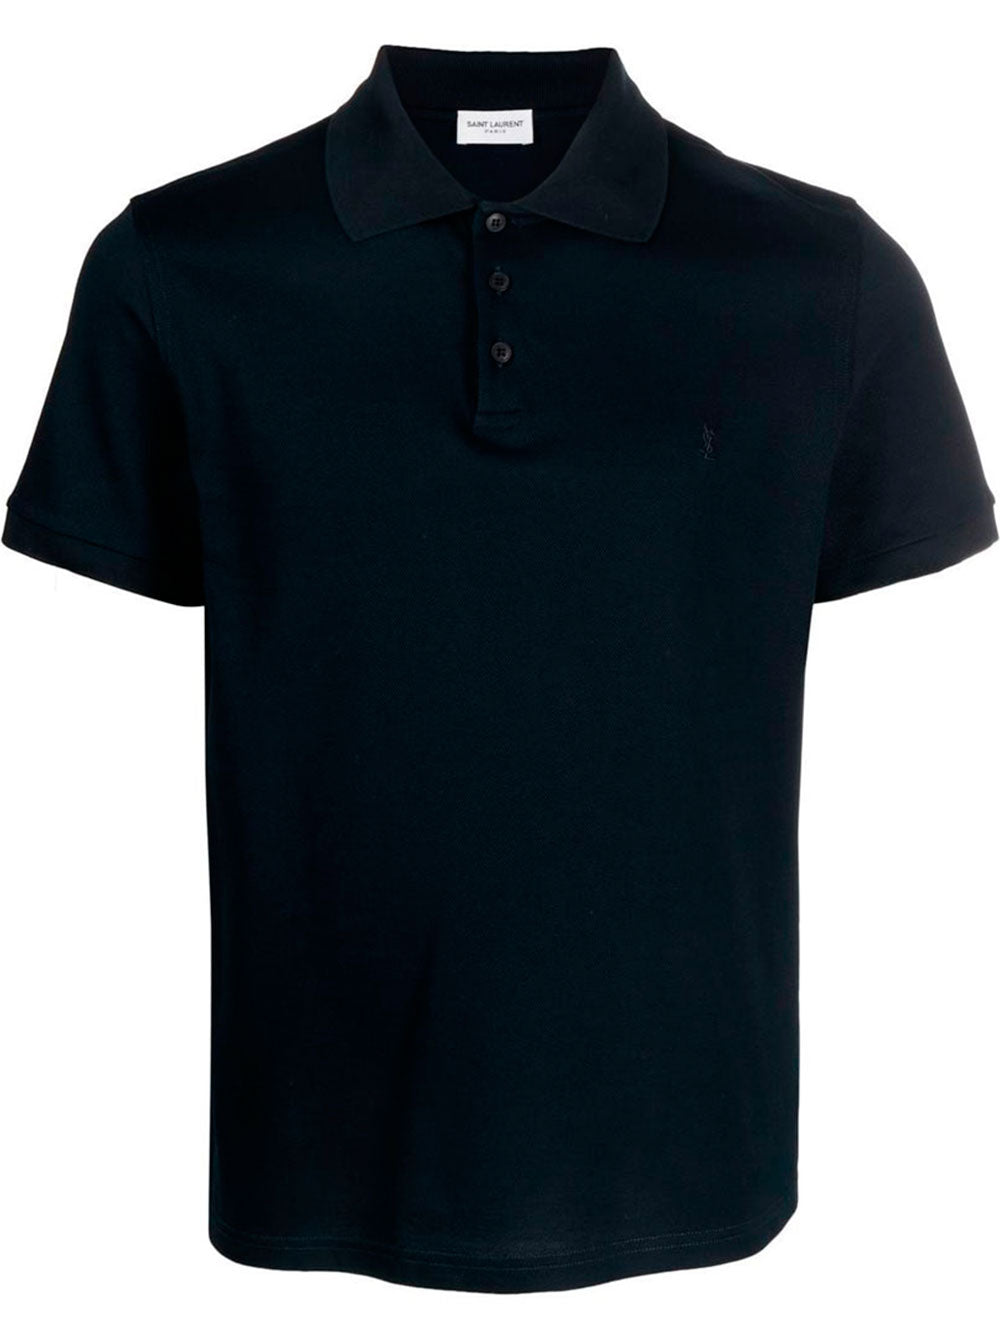 Short-sleeve cotton polo shirt